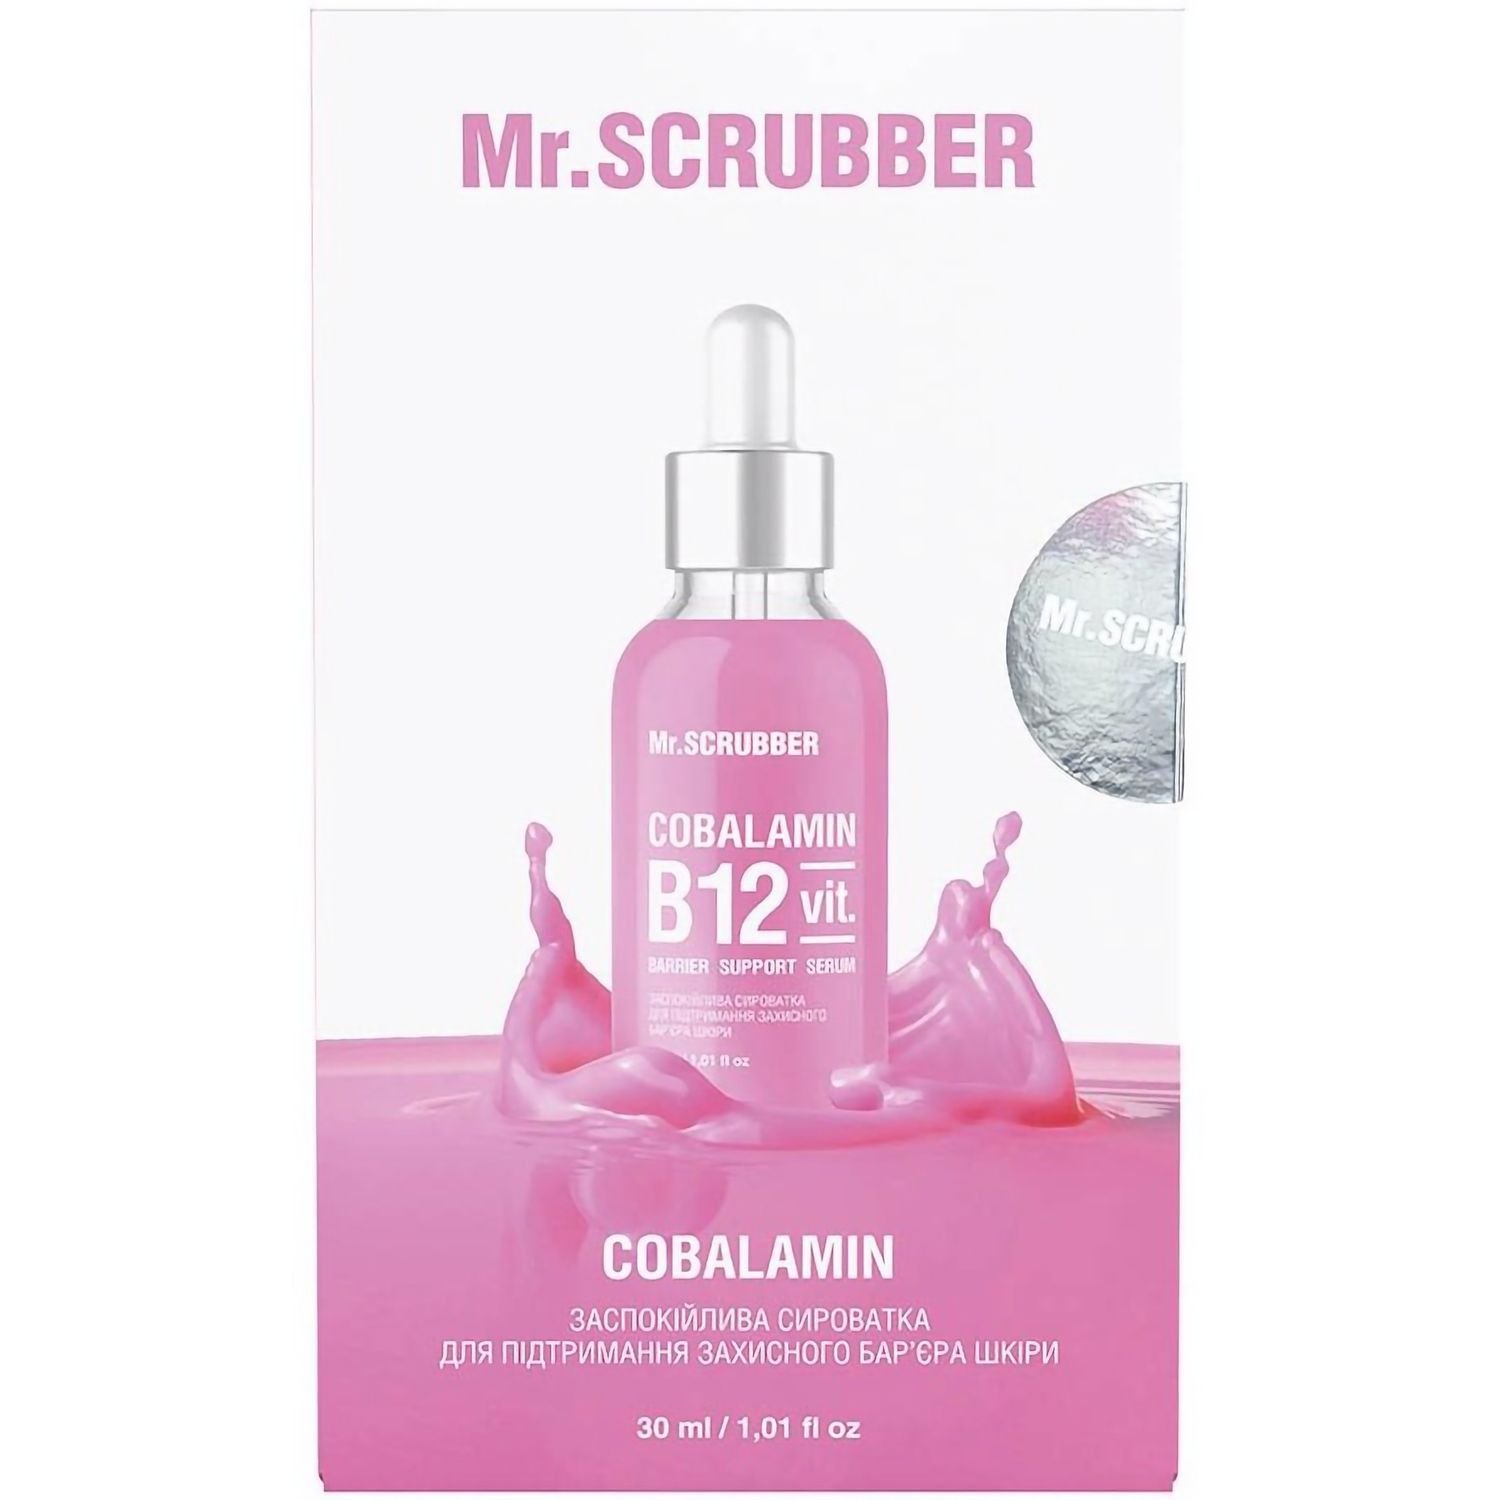 Заспокійлива сироватка для Mr.Scrubber Cobalamin B12 для підтримки захисного бар'єру шкіри обличчя 30 мл - фото 3